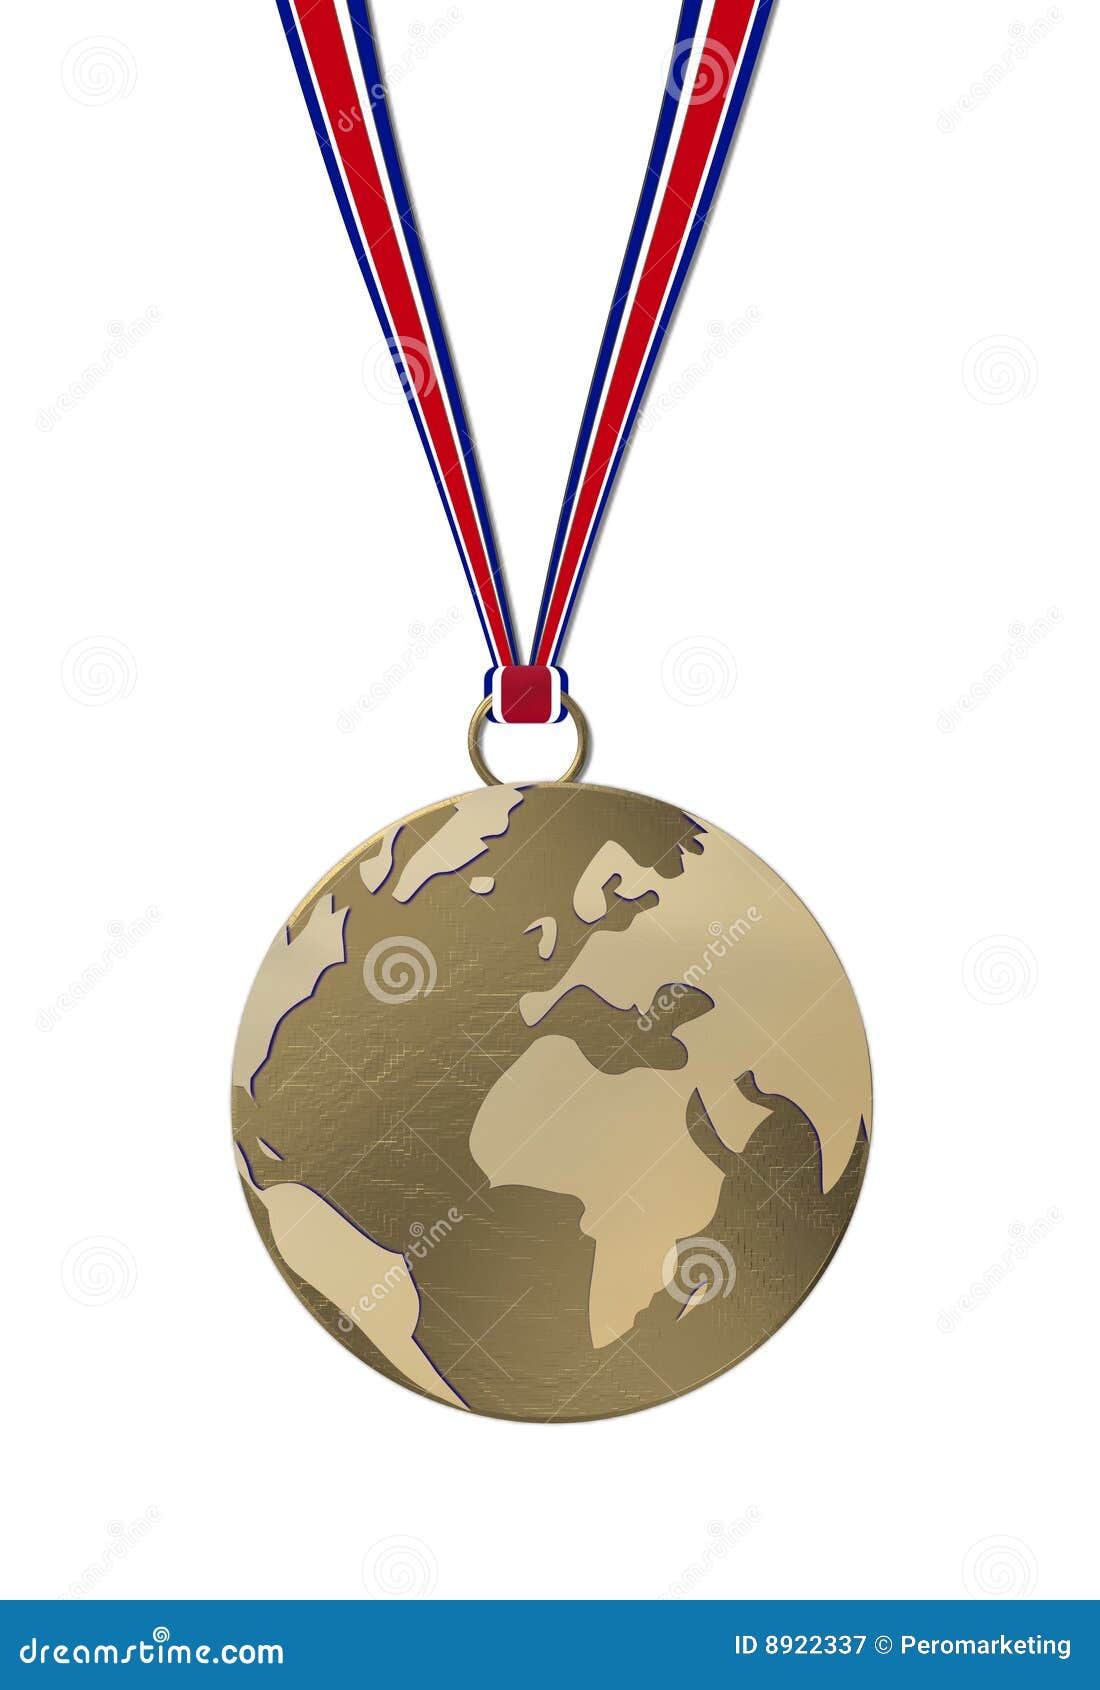 Medalla del mundo bajo la forma de reproducción de la tierra en tonos marrones, colgando en el extremo de cintas rojas, blancas y azules. Aislado en un fondo blanco.